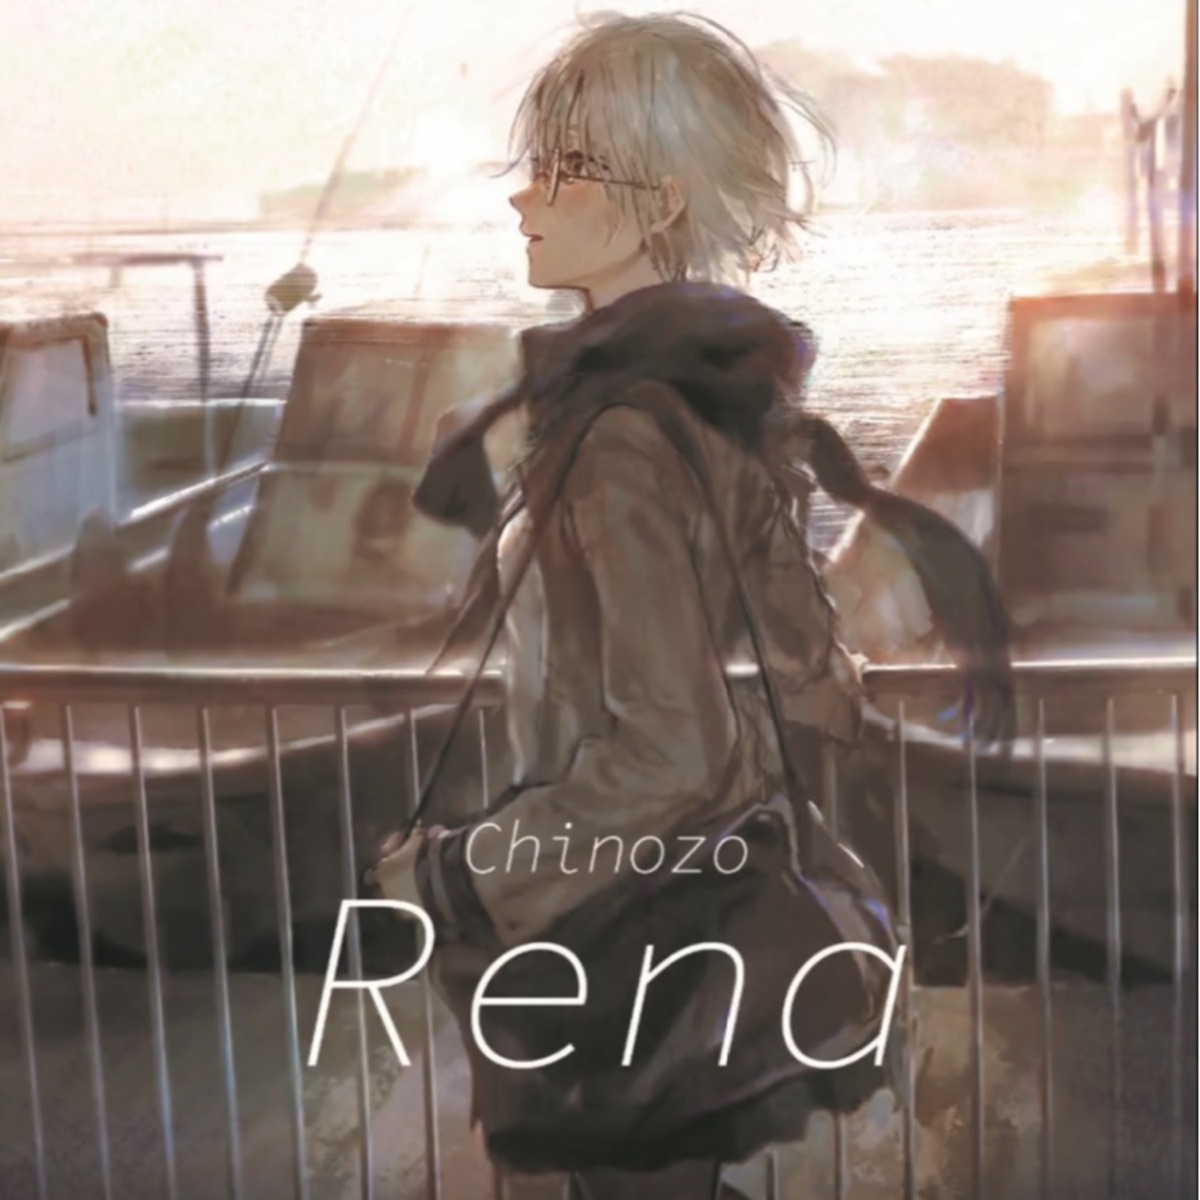 Rena - EP - Album by CHINOZO - Apple Music